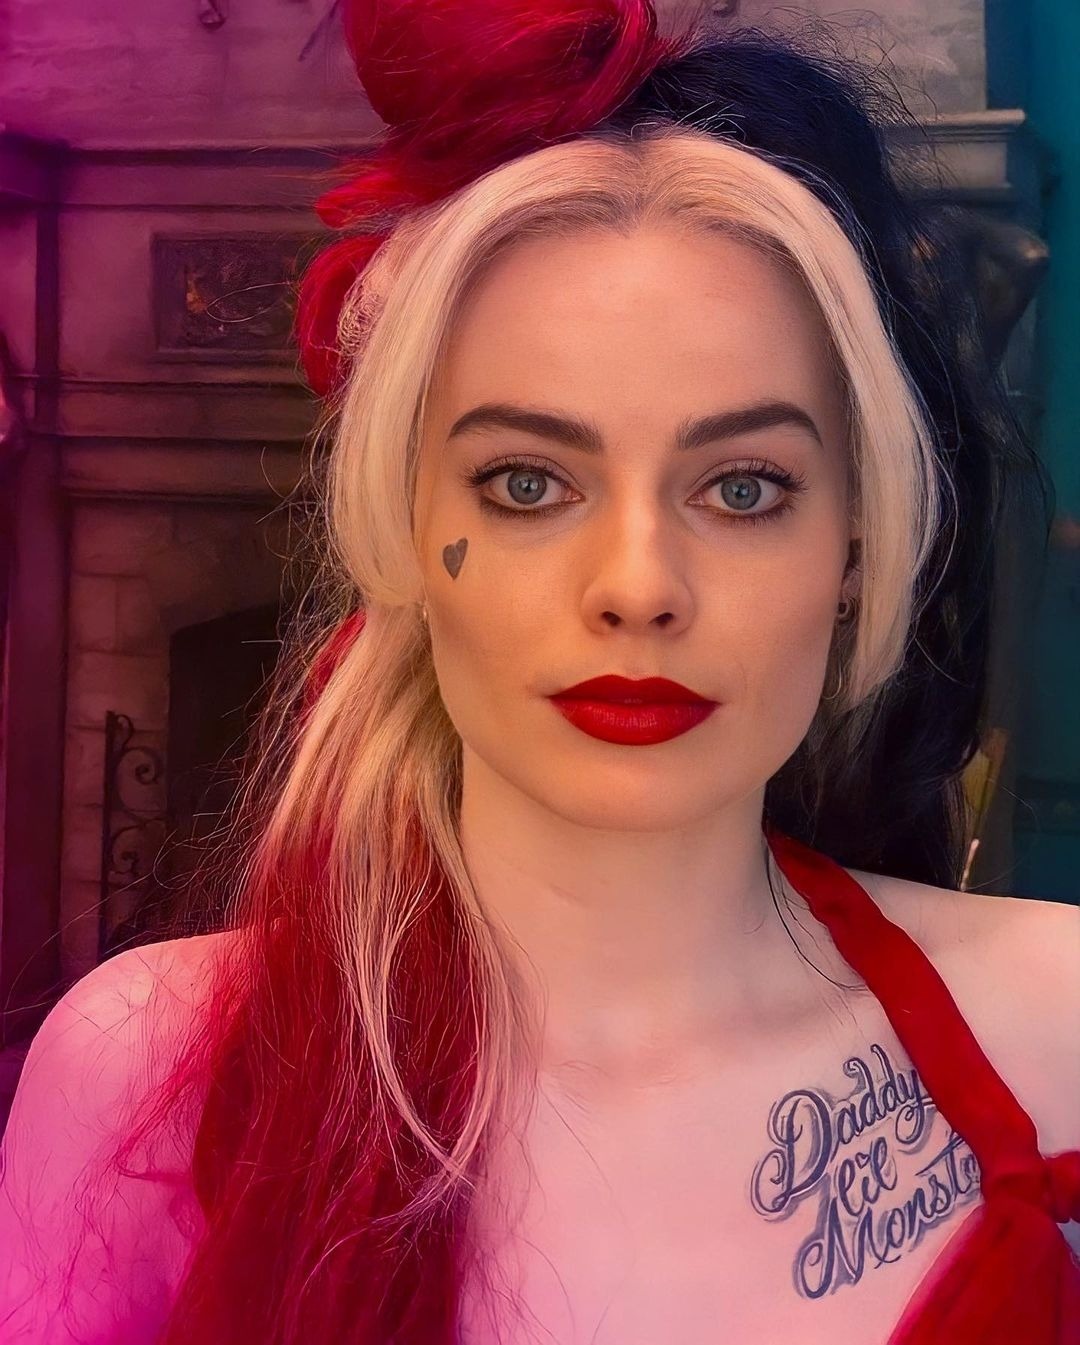 hotandfunnywomen:Margot Robbie, Harley Quinn 